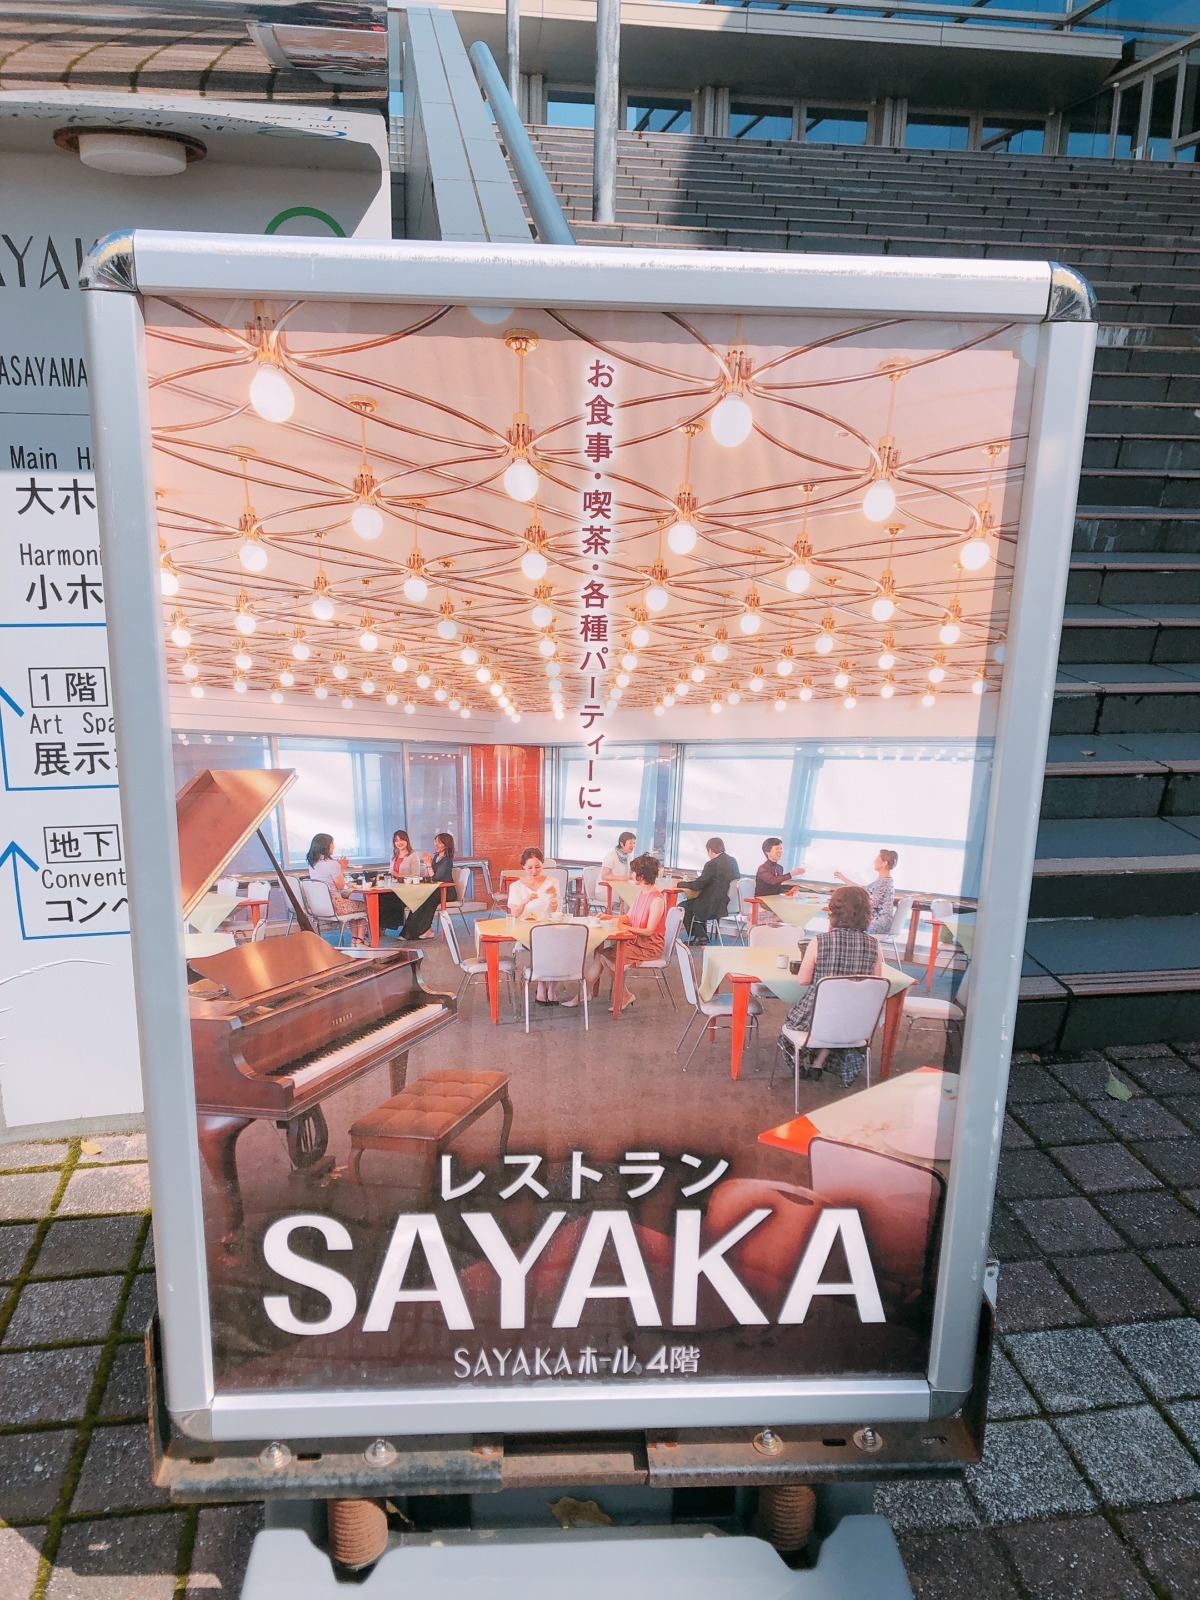 21 3 31 水 閉店 大阪狭山市 Sayakaホール内にある レストランsayaka が閉店するみたい さかにゅー